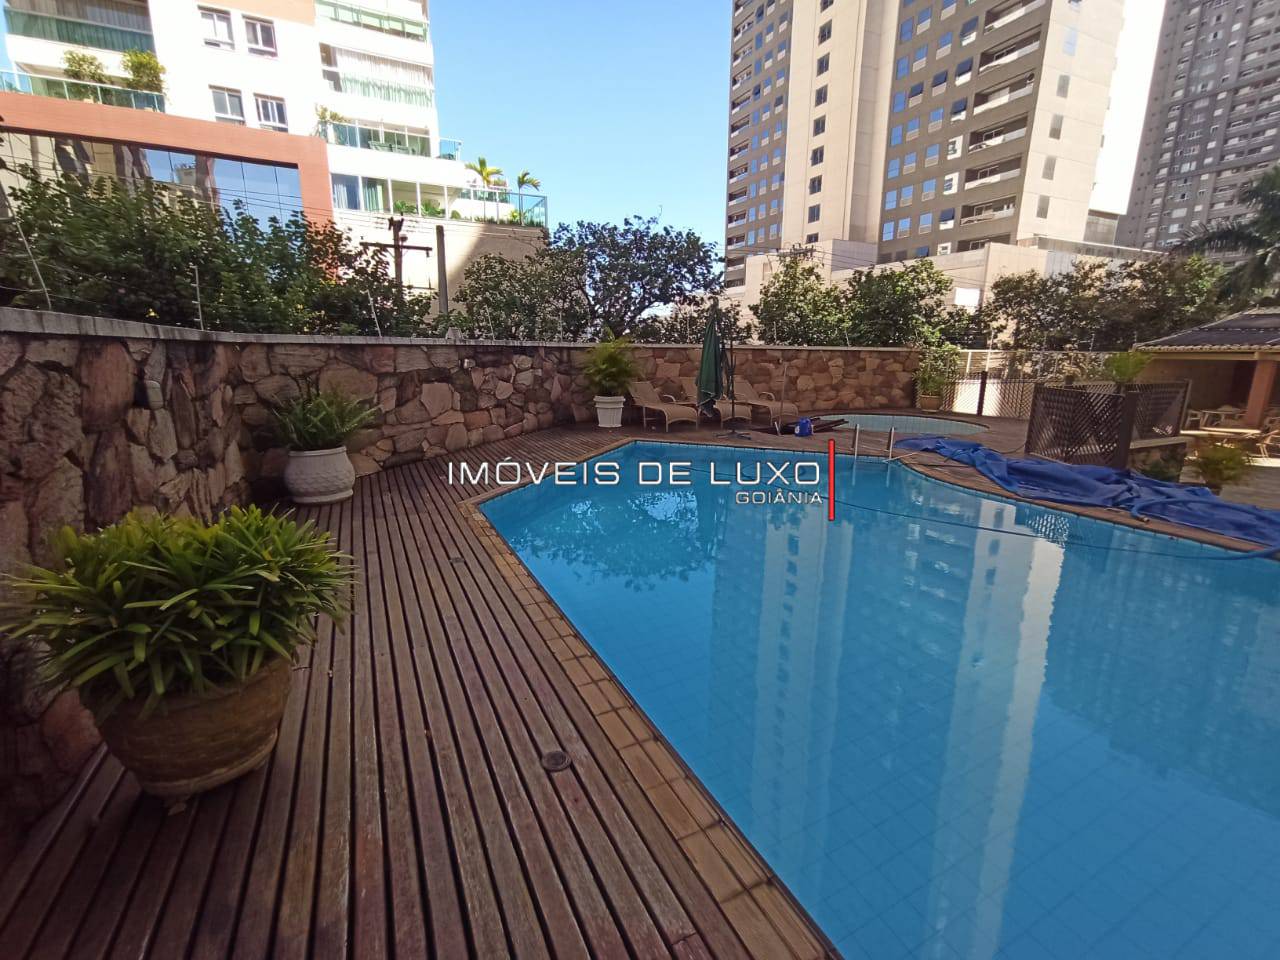 Imóveis de Luxo - Apartamento com 259m2,  4 suites, 3 vagas garagem no Setor Bueno